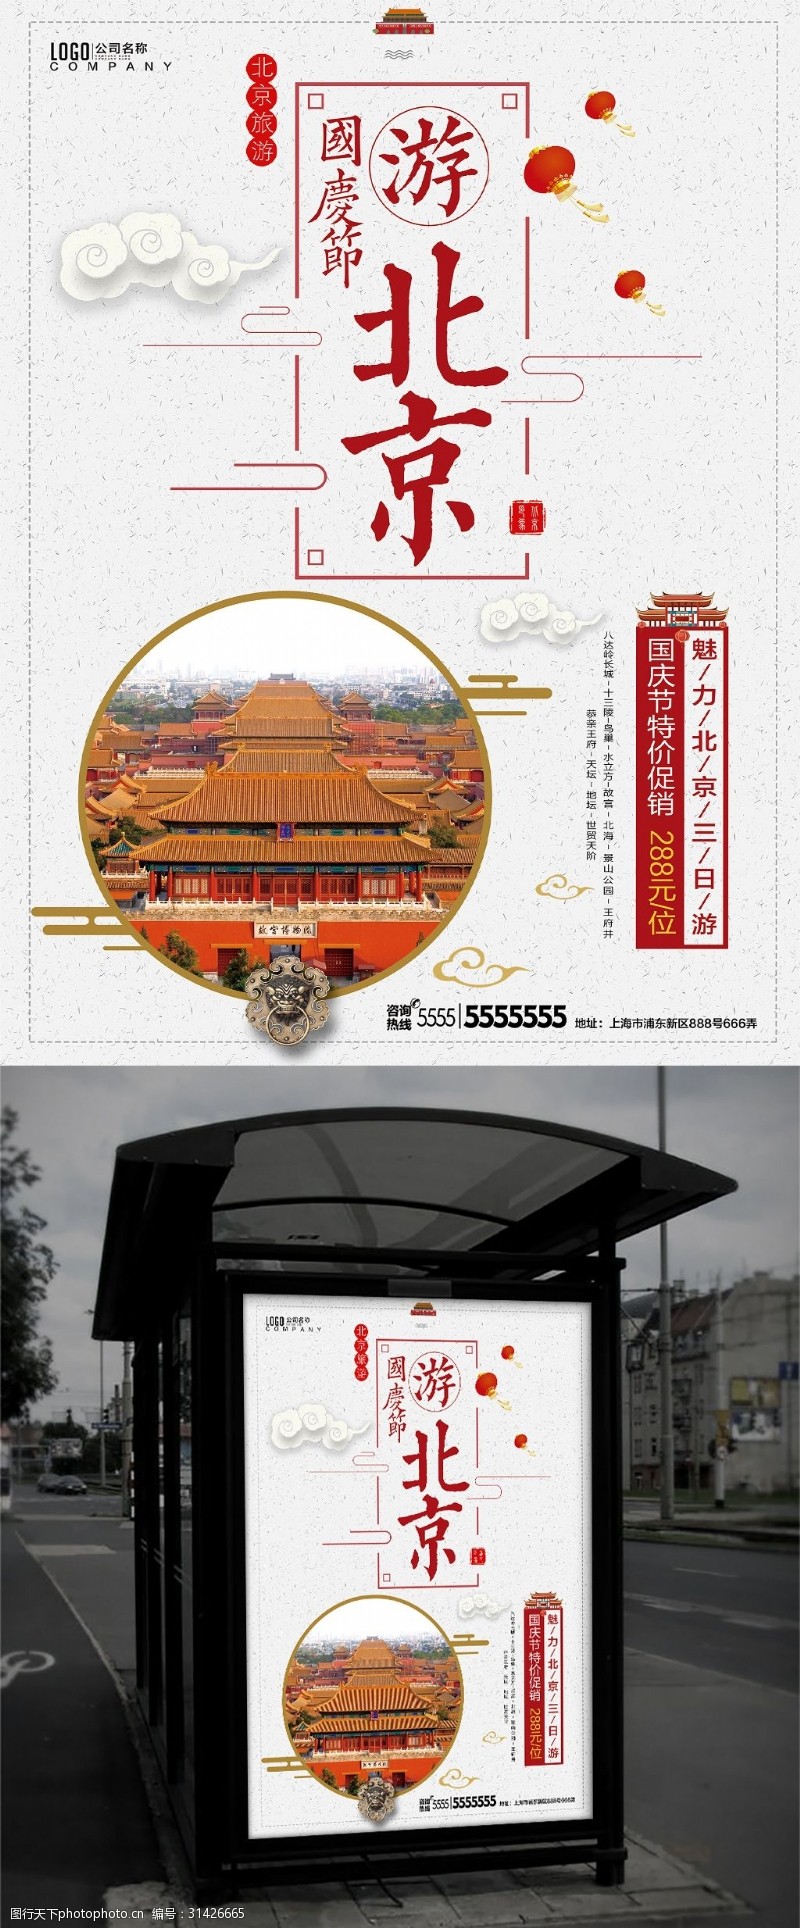 北京首都博物馆清新中国风国庆节北京旅游促销活动海报